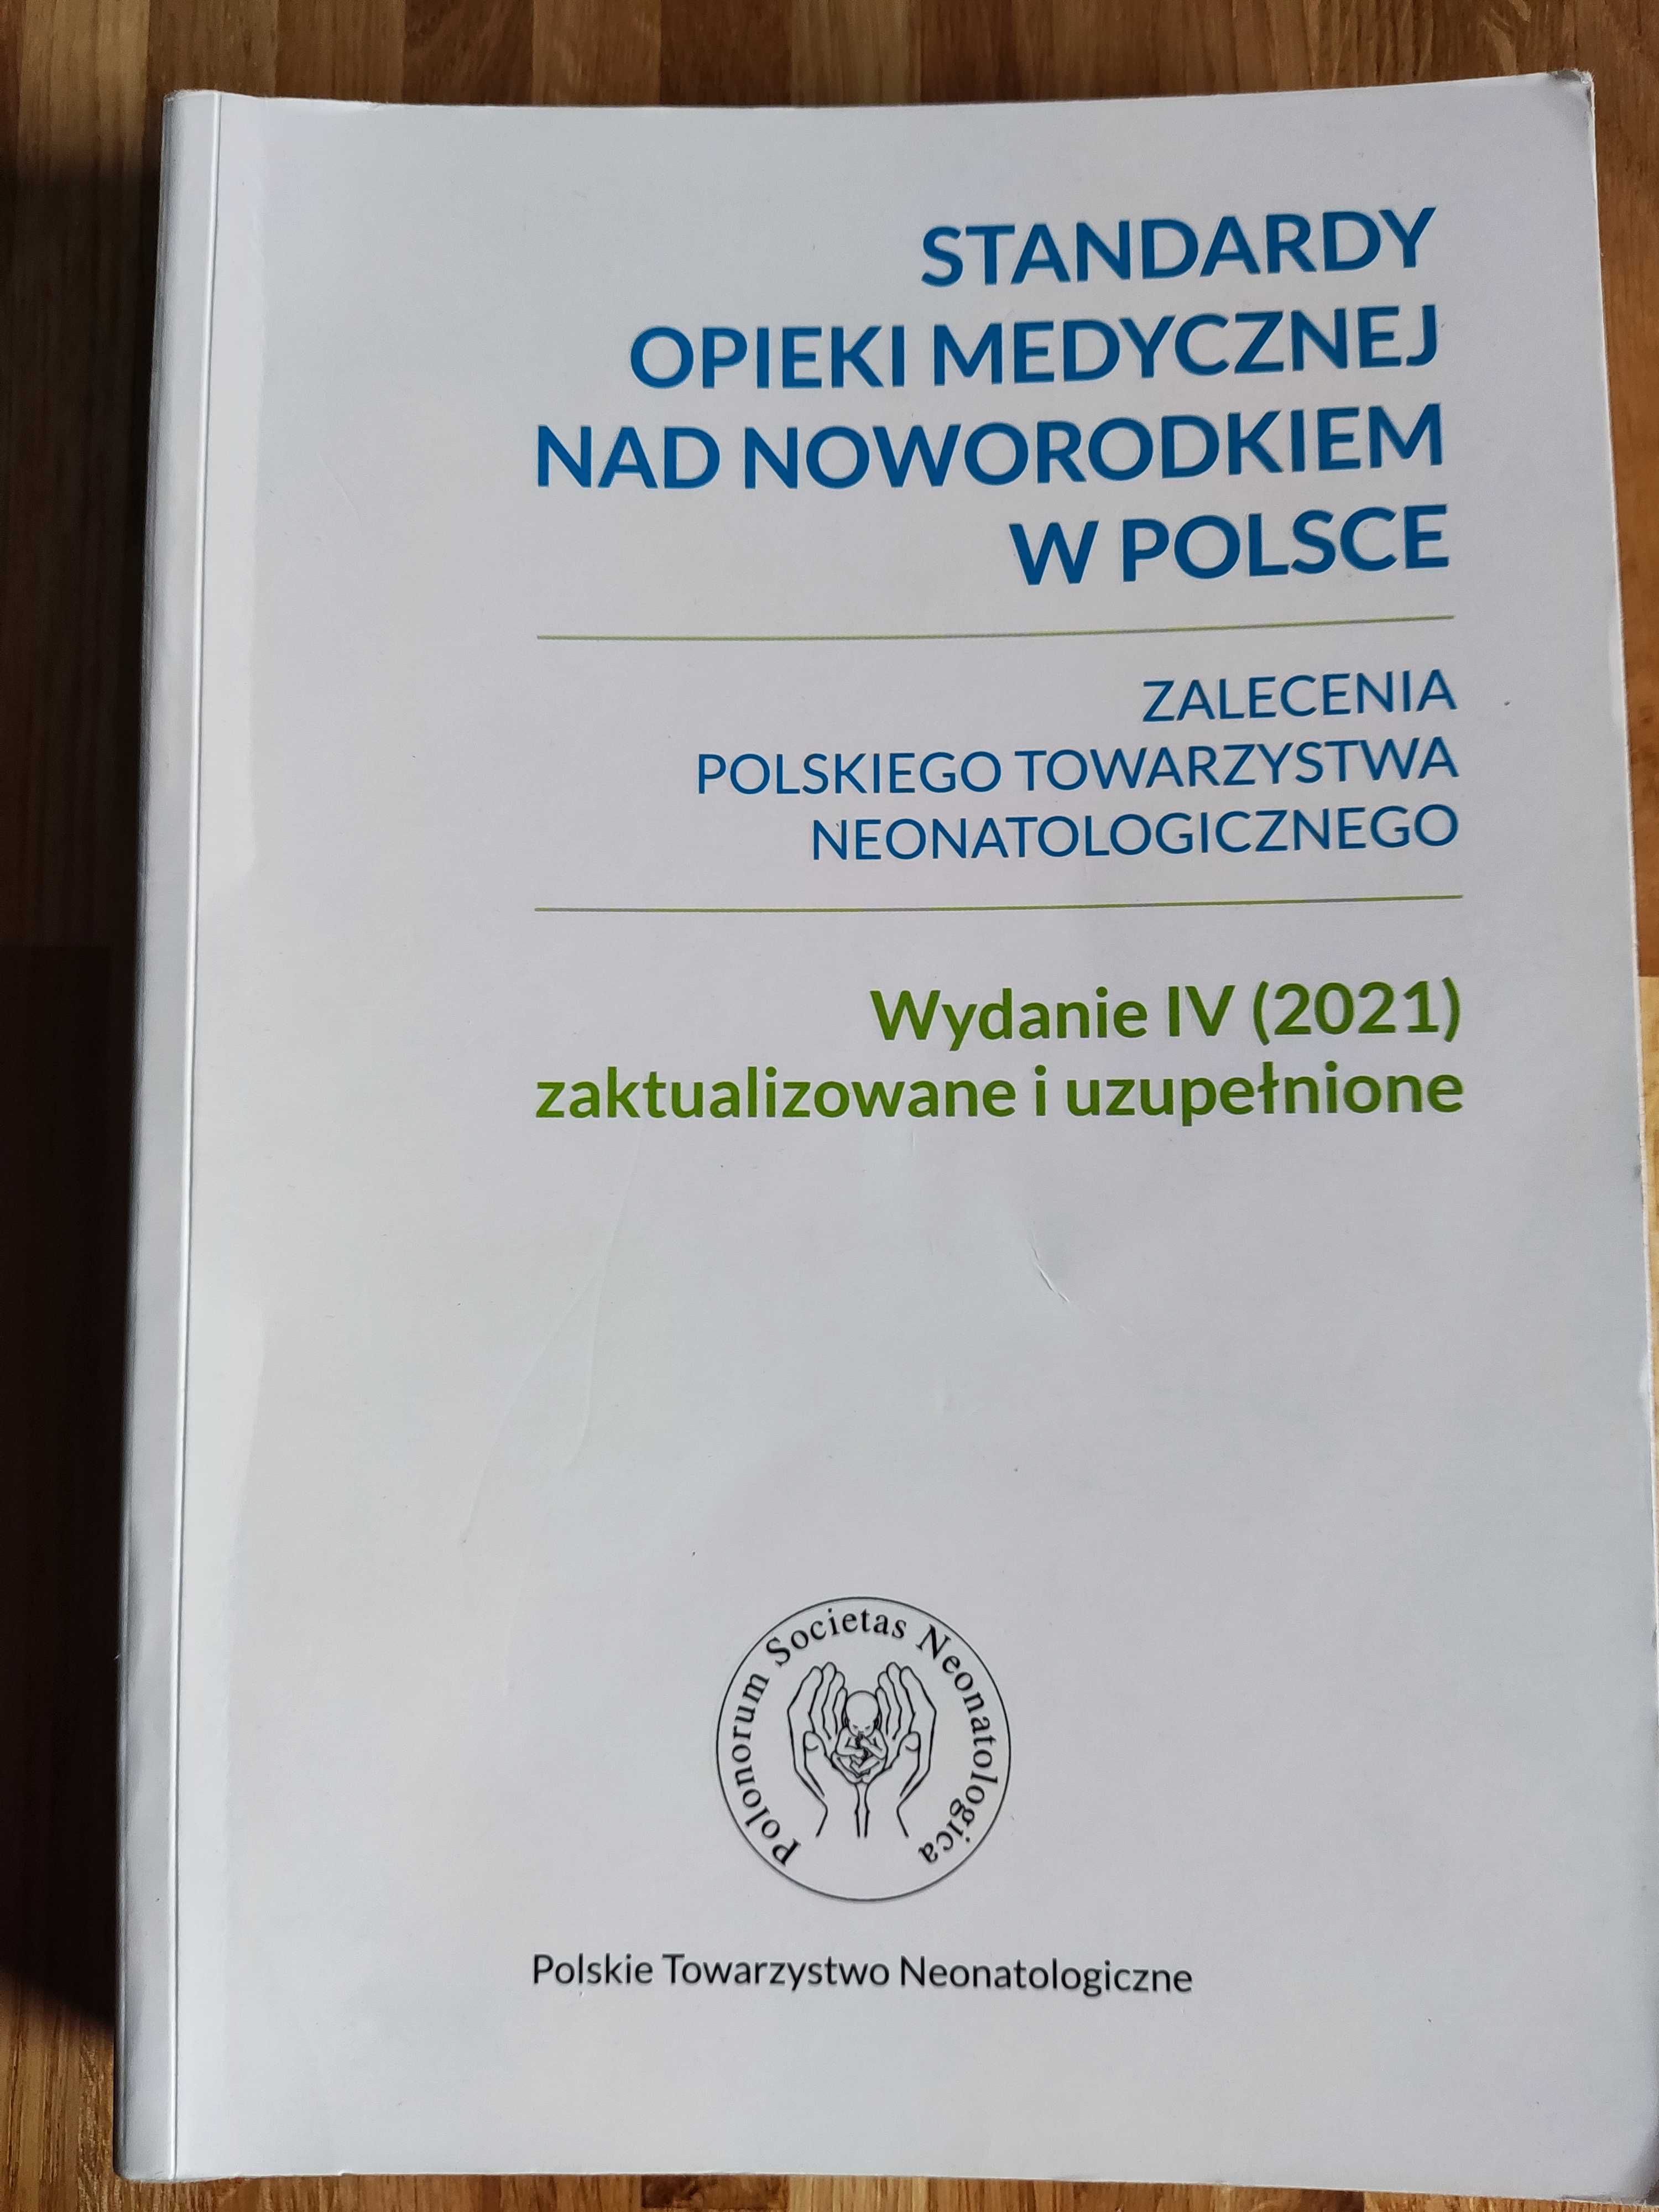 Standardy opieki medycznej nad noworodkiem w Polsce  - wydanie IV